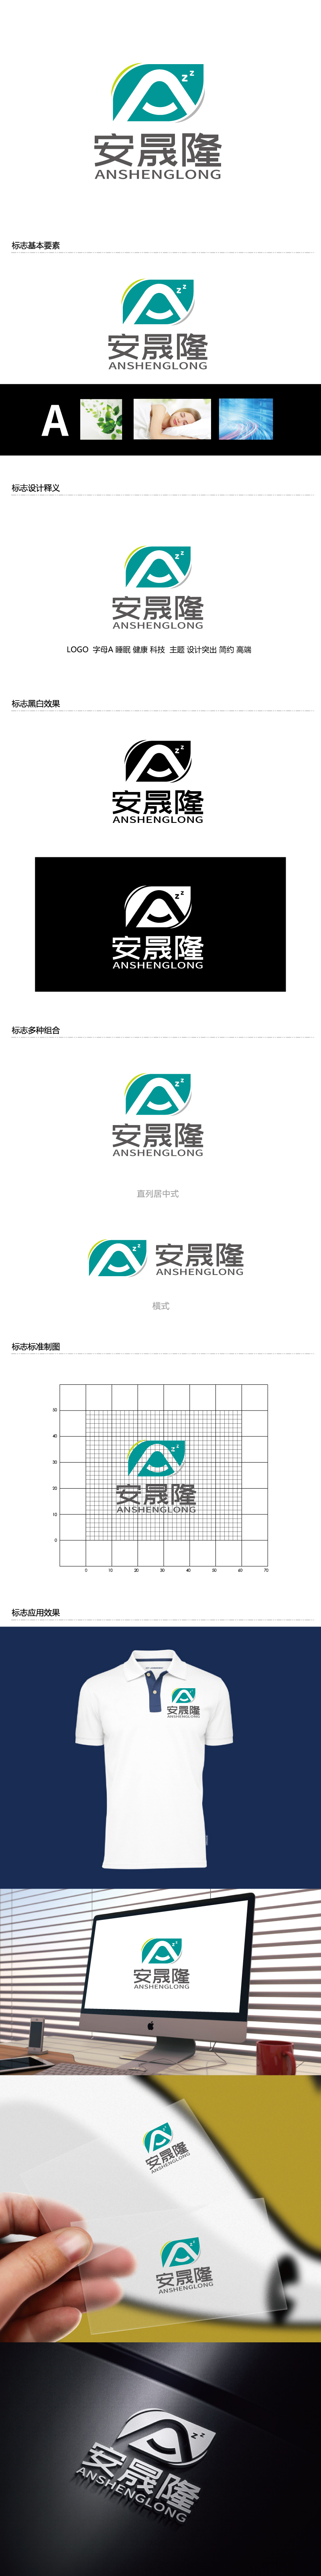 张俊的安晟隆（安晟隆（上海）新材料科技有限公司）logo设计